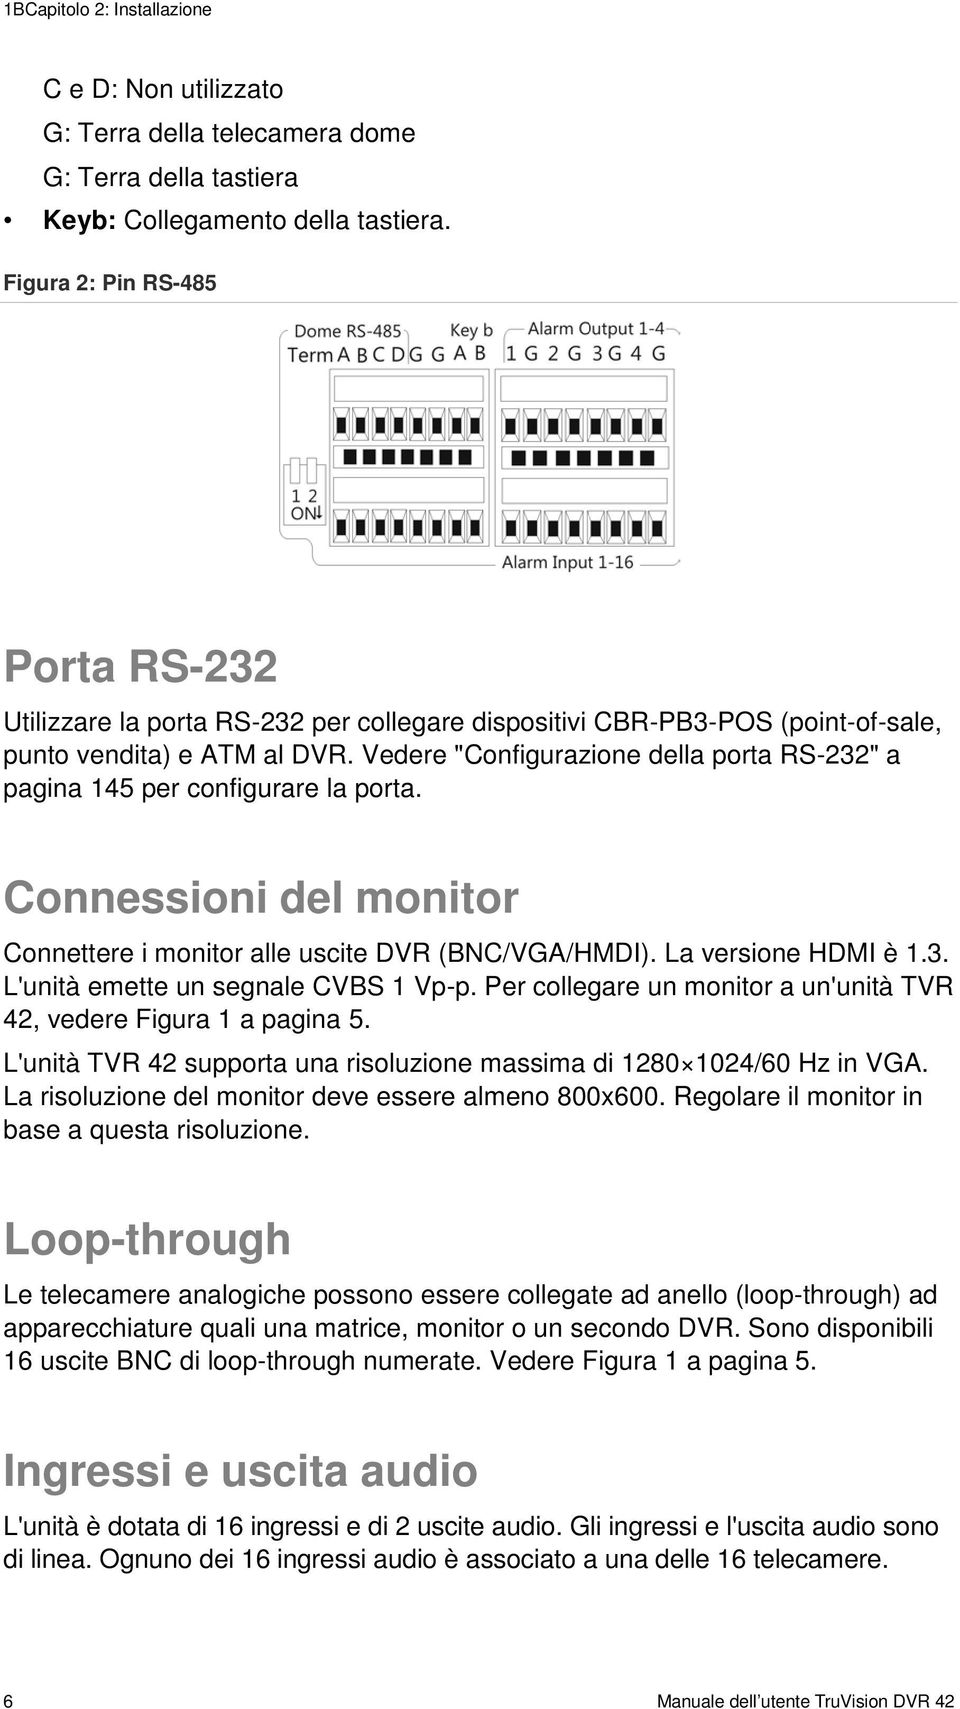 Vedere "Configurazione della porta RS-232" a pagina 145 per configurare la porta. Connessioni del monitor Connettere i monitor alle uscite DVR (BNC/VGA/HMDI). La versione HDMI è 1.3. L'unità emette un segnale CVBS 1 Vp-p.